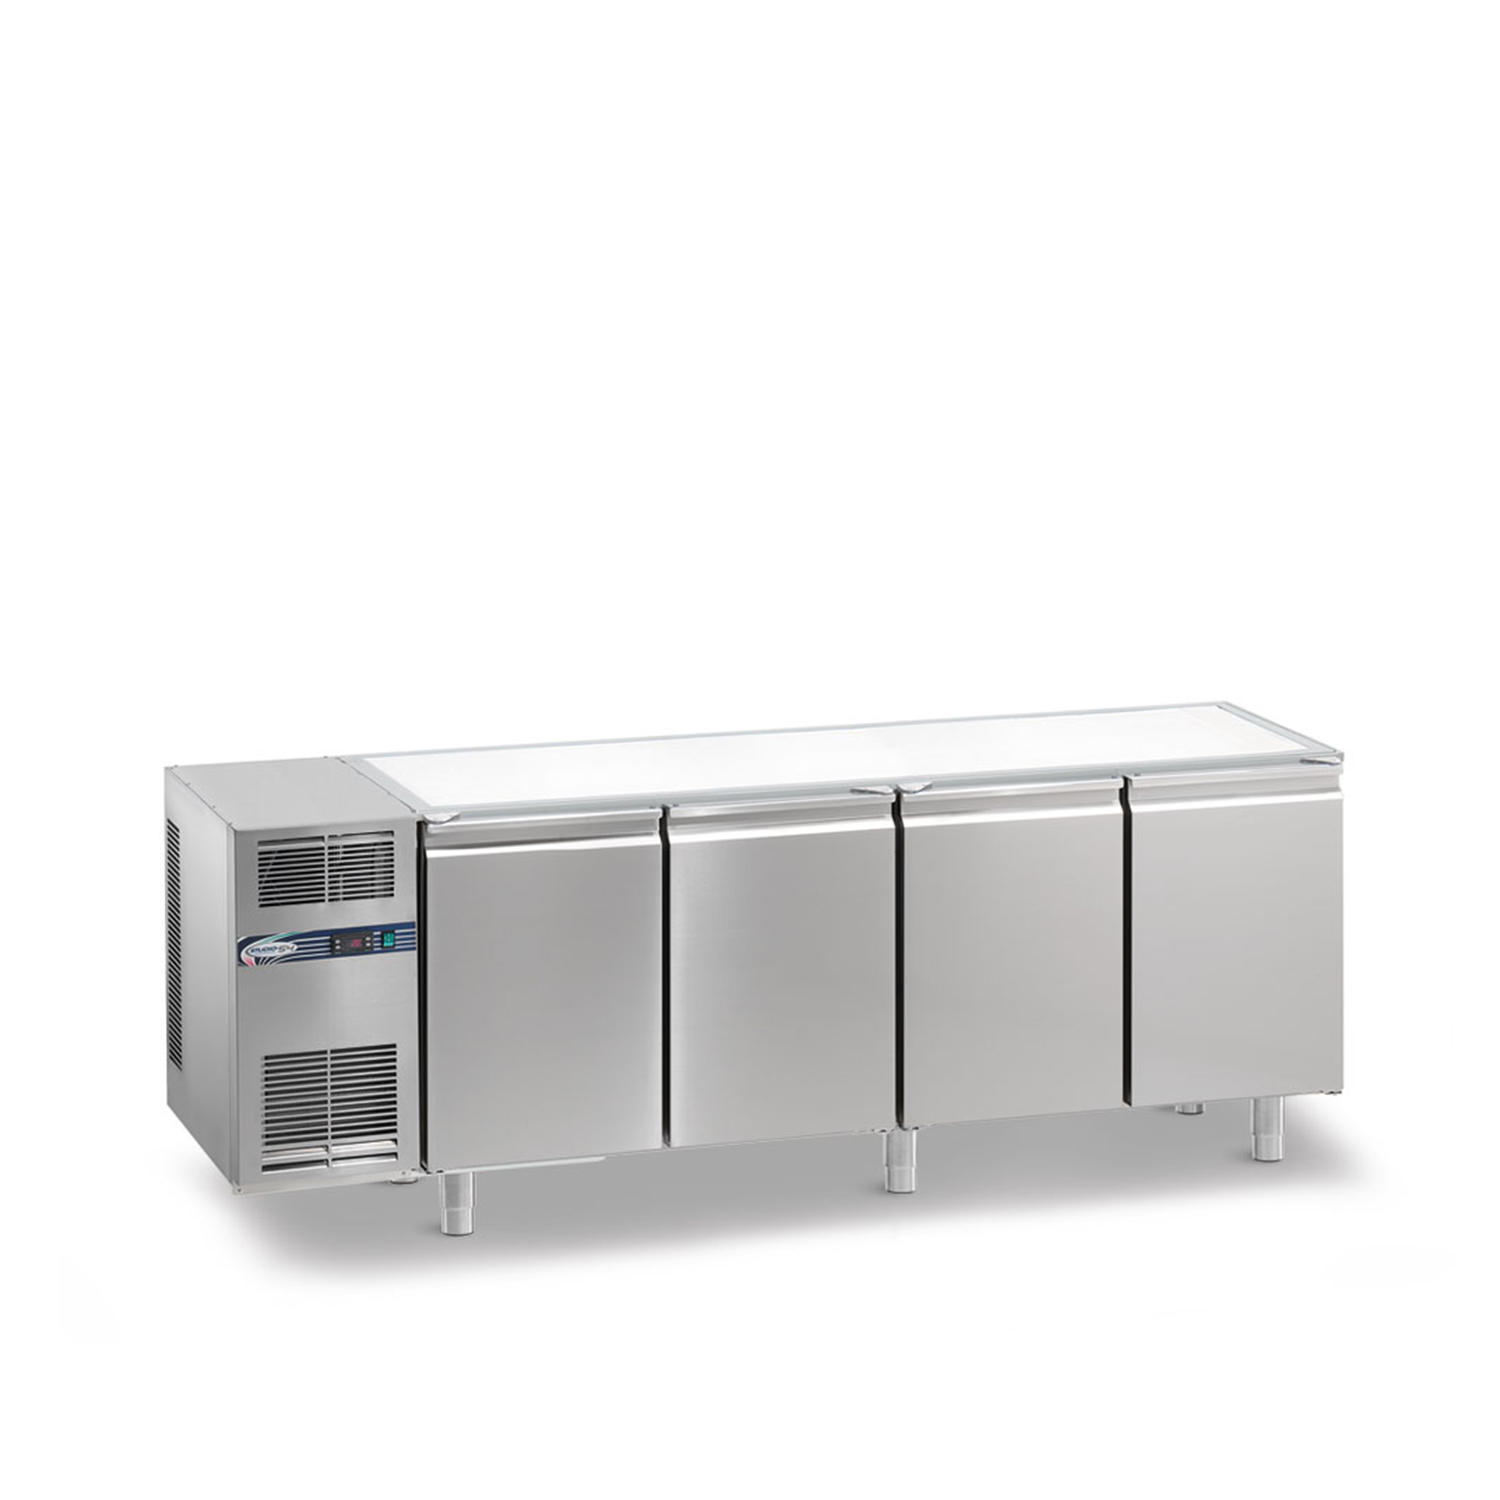 Tiefkühltisch DAIQUIRI Top Line H660 GN 1/1, B 2200  x T 700 x H 810 mm, 4 Kühlfächer, ohne Arbeitsplatte